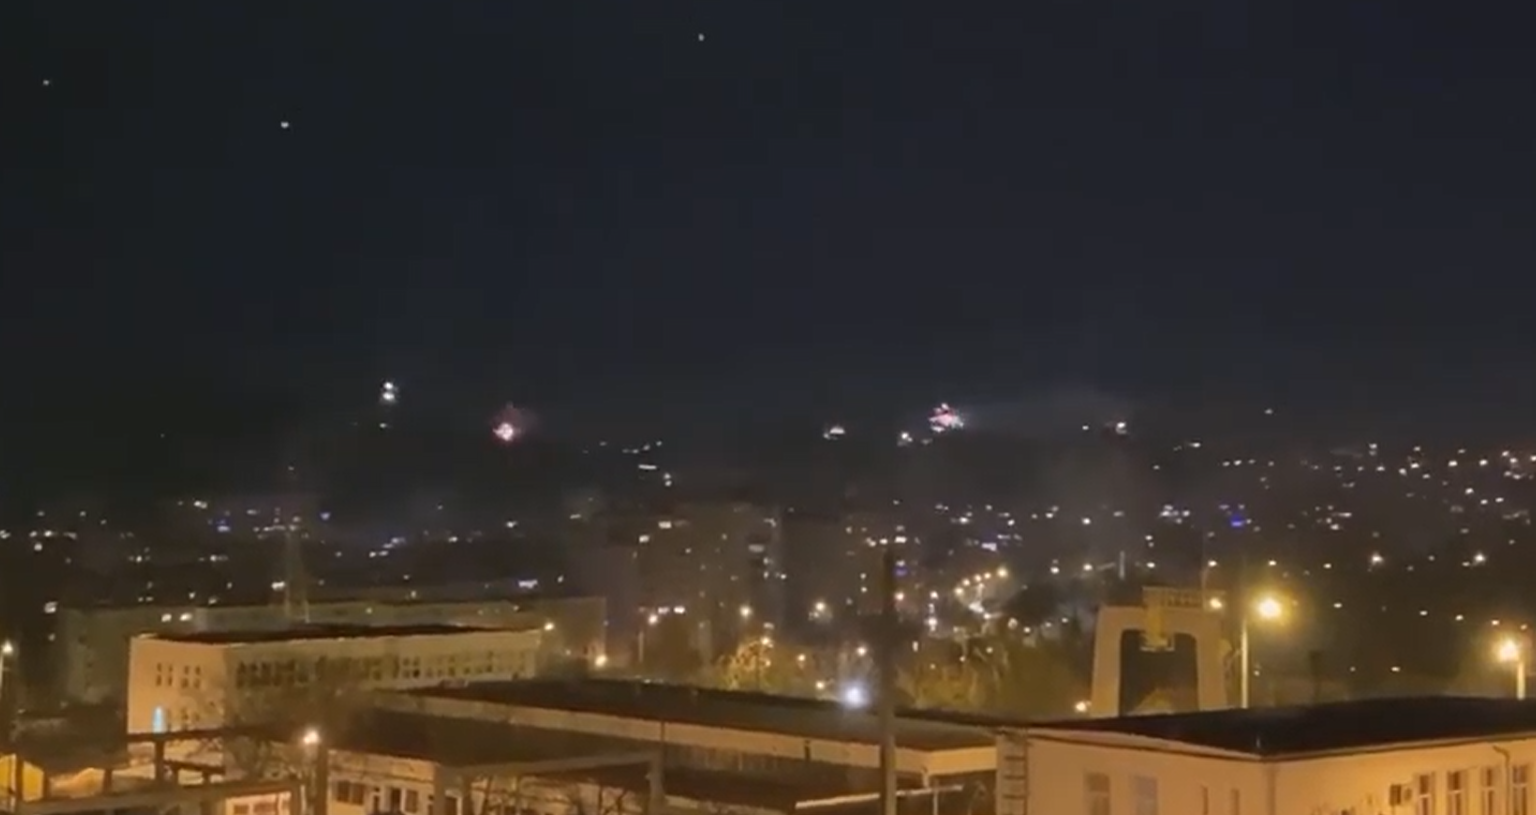 La mulți ani, 2021! Artificiile au luminat cerul Clujului chiar și în pandemie – VIDEO